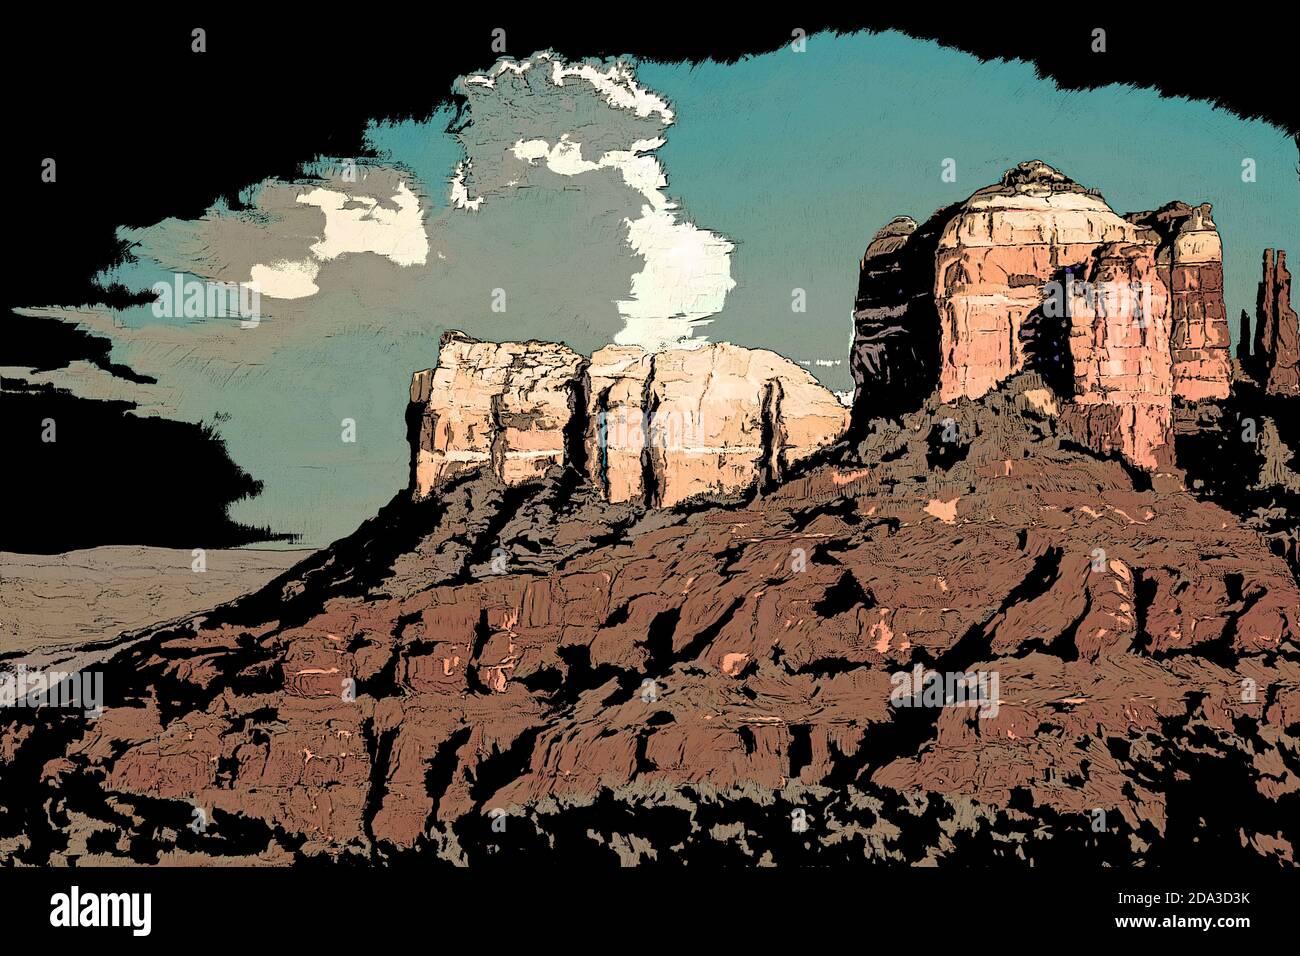 Ilustración de un paisaje de Arizona en un estilo gráfico novedoso Foto de stock